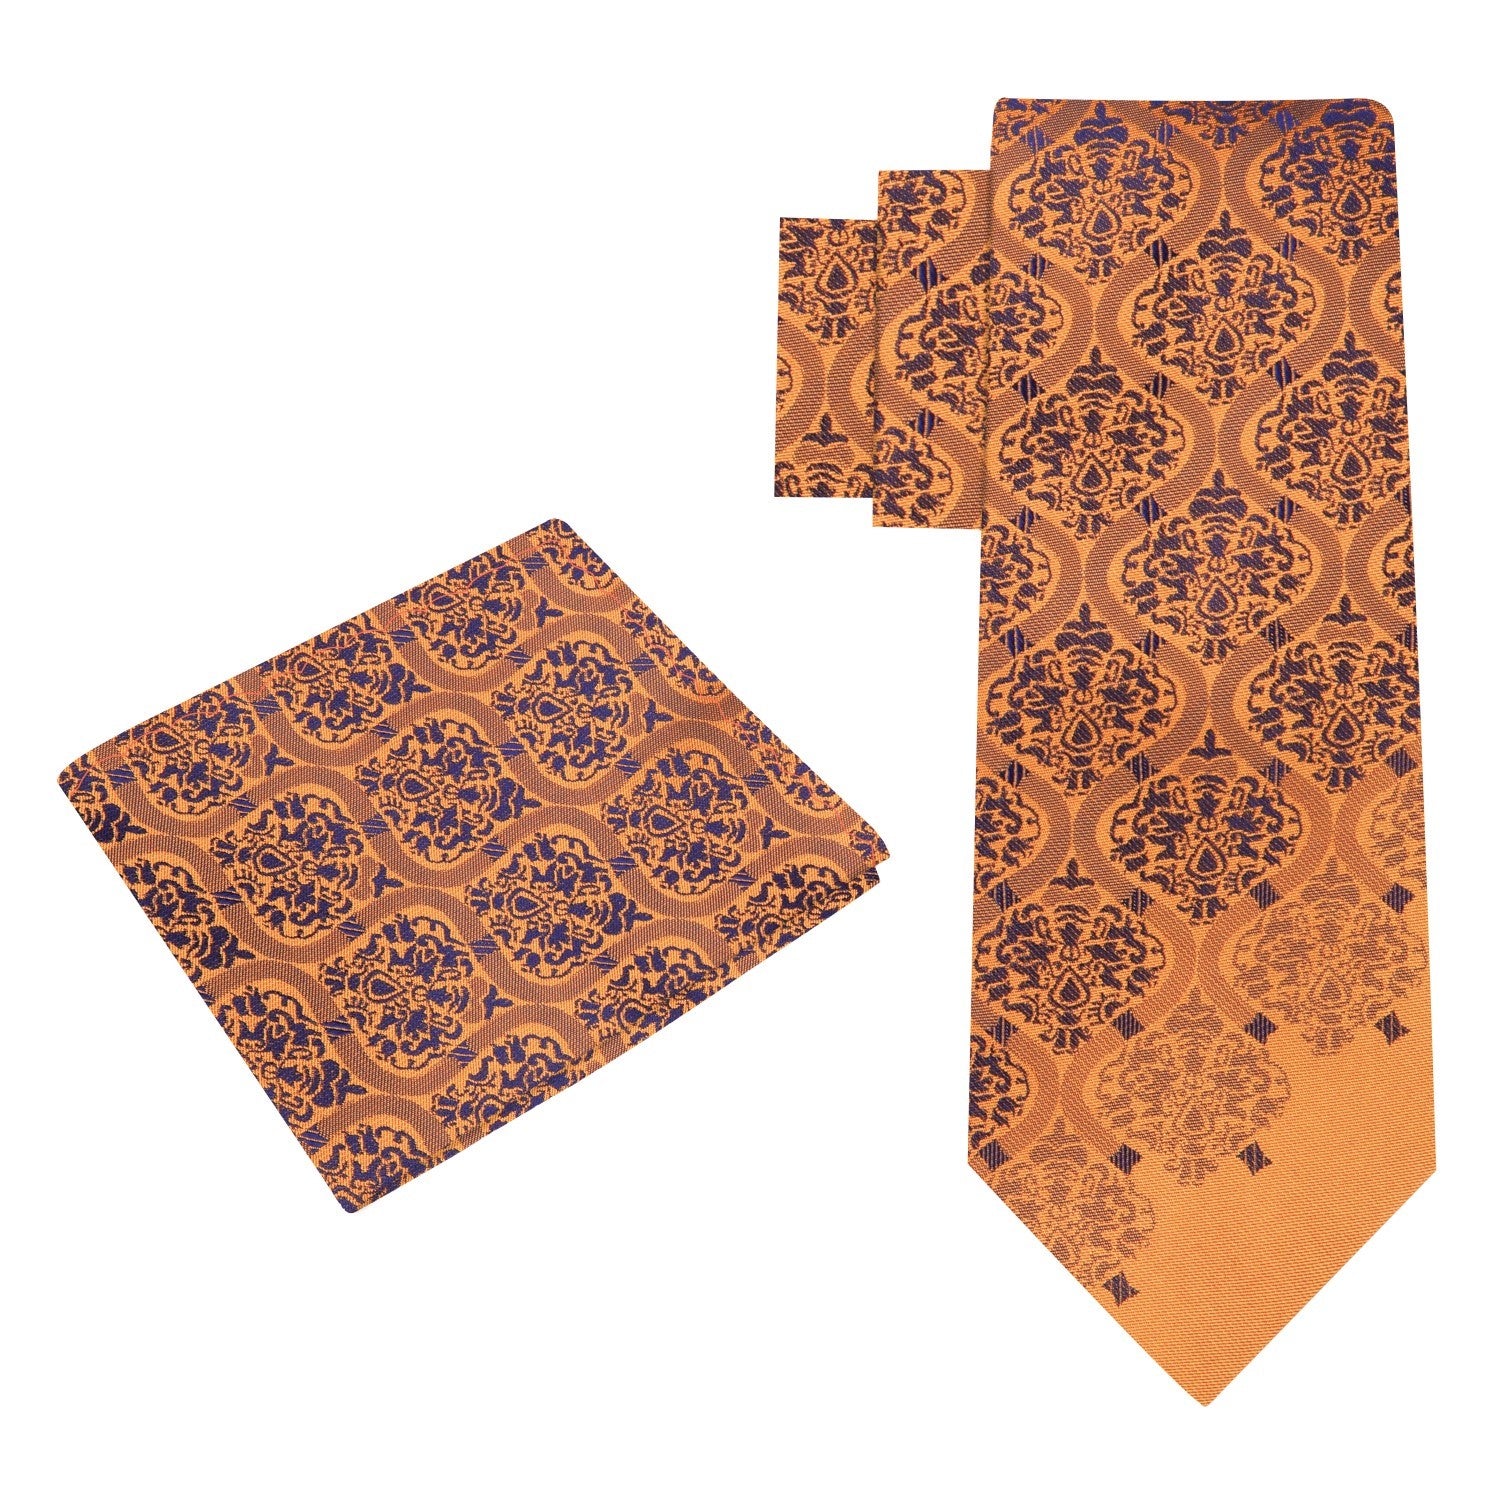 Alt View: A Copper Orange, Dark Blue Intricate Abstract Pattern Silk Necktie, Matching Silk Pocket Square